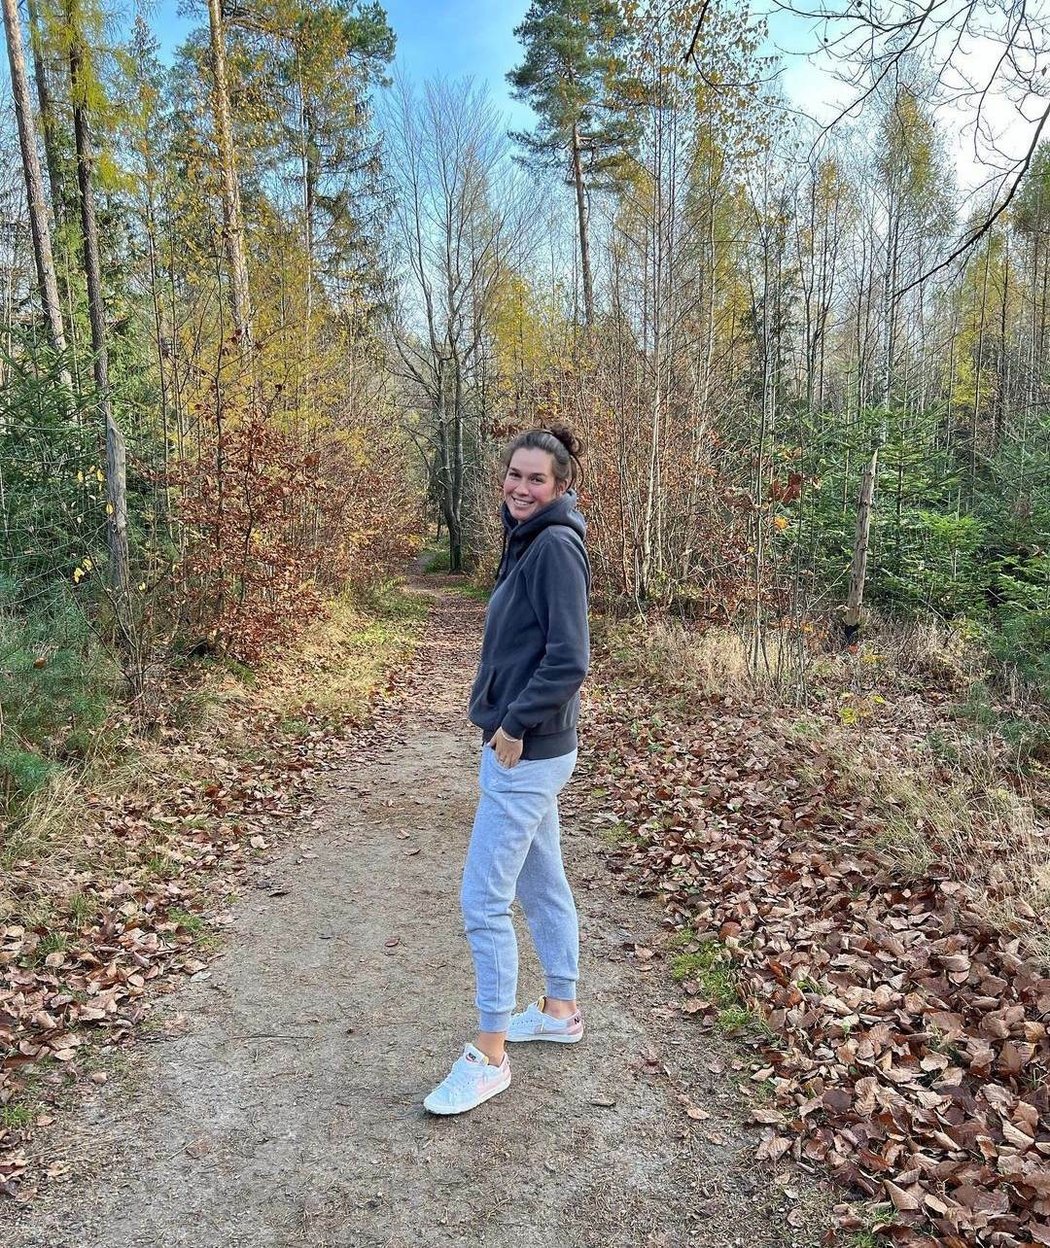 Tenistka Miriam Kolodziejová se po postupu své parťačky Vondroušové neubránila slzám štěstí